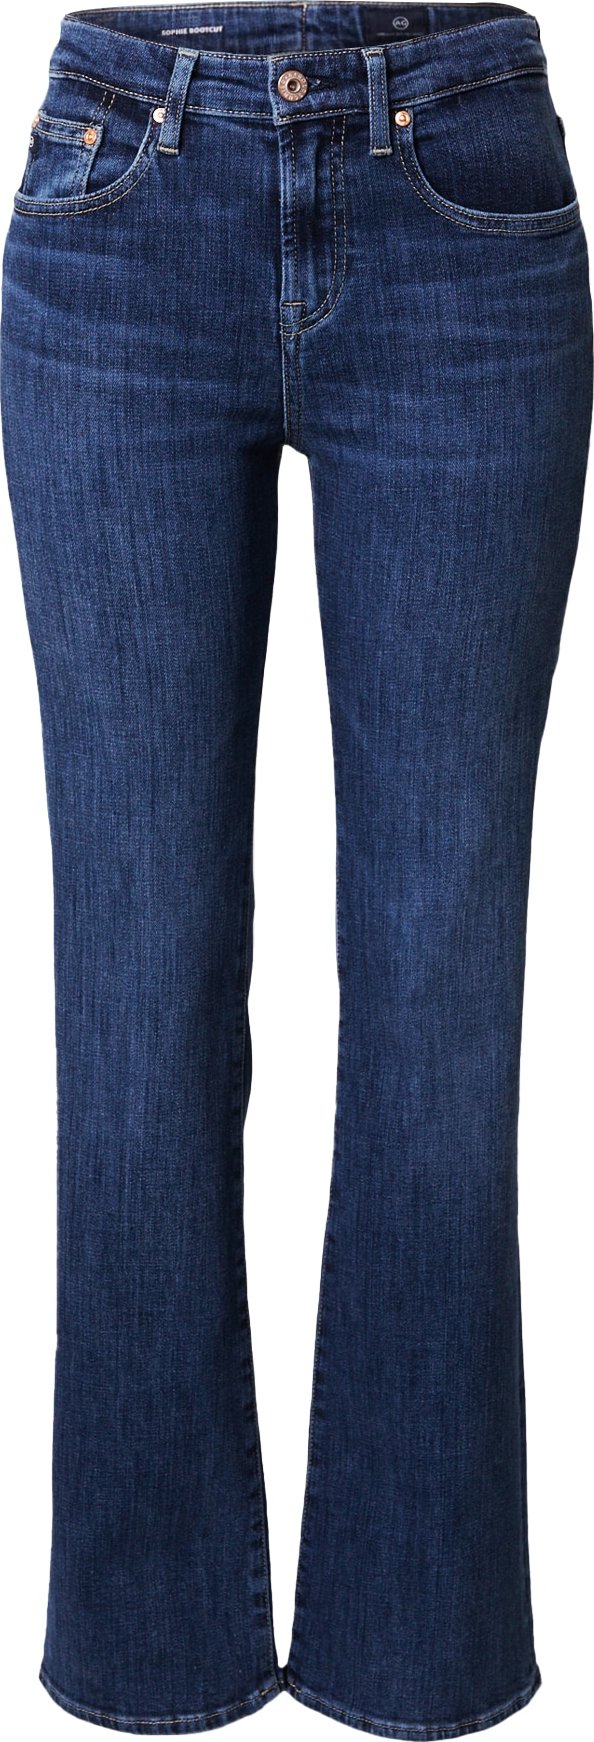 Džíny 'SOPHIE' ag jeans modrá džínovina